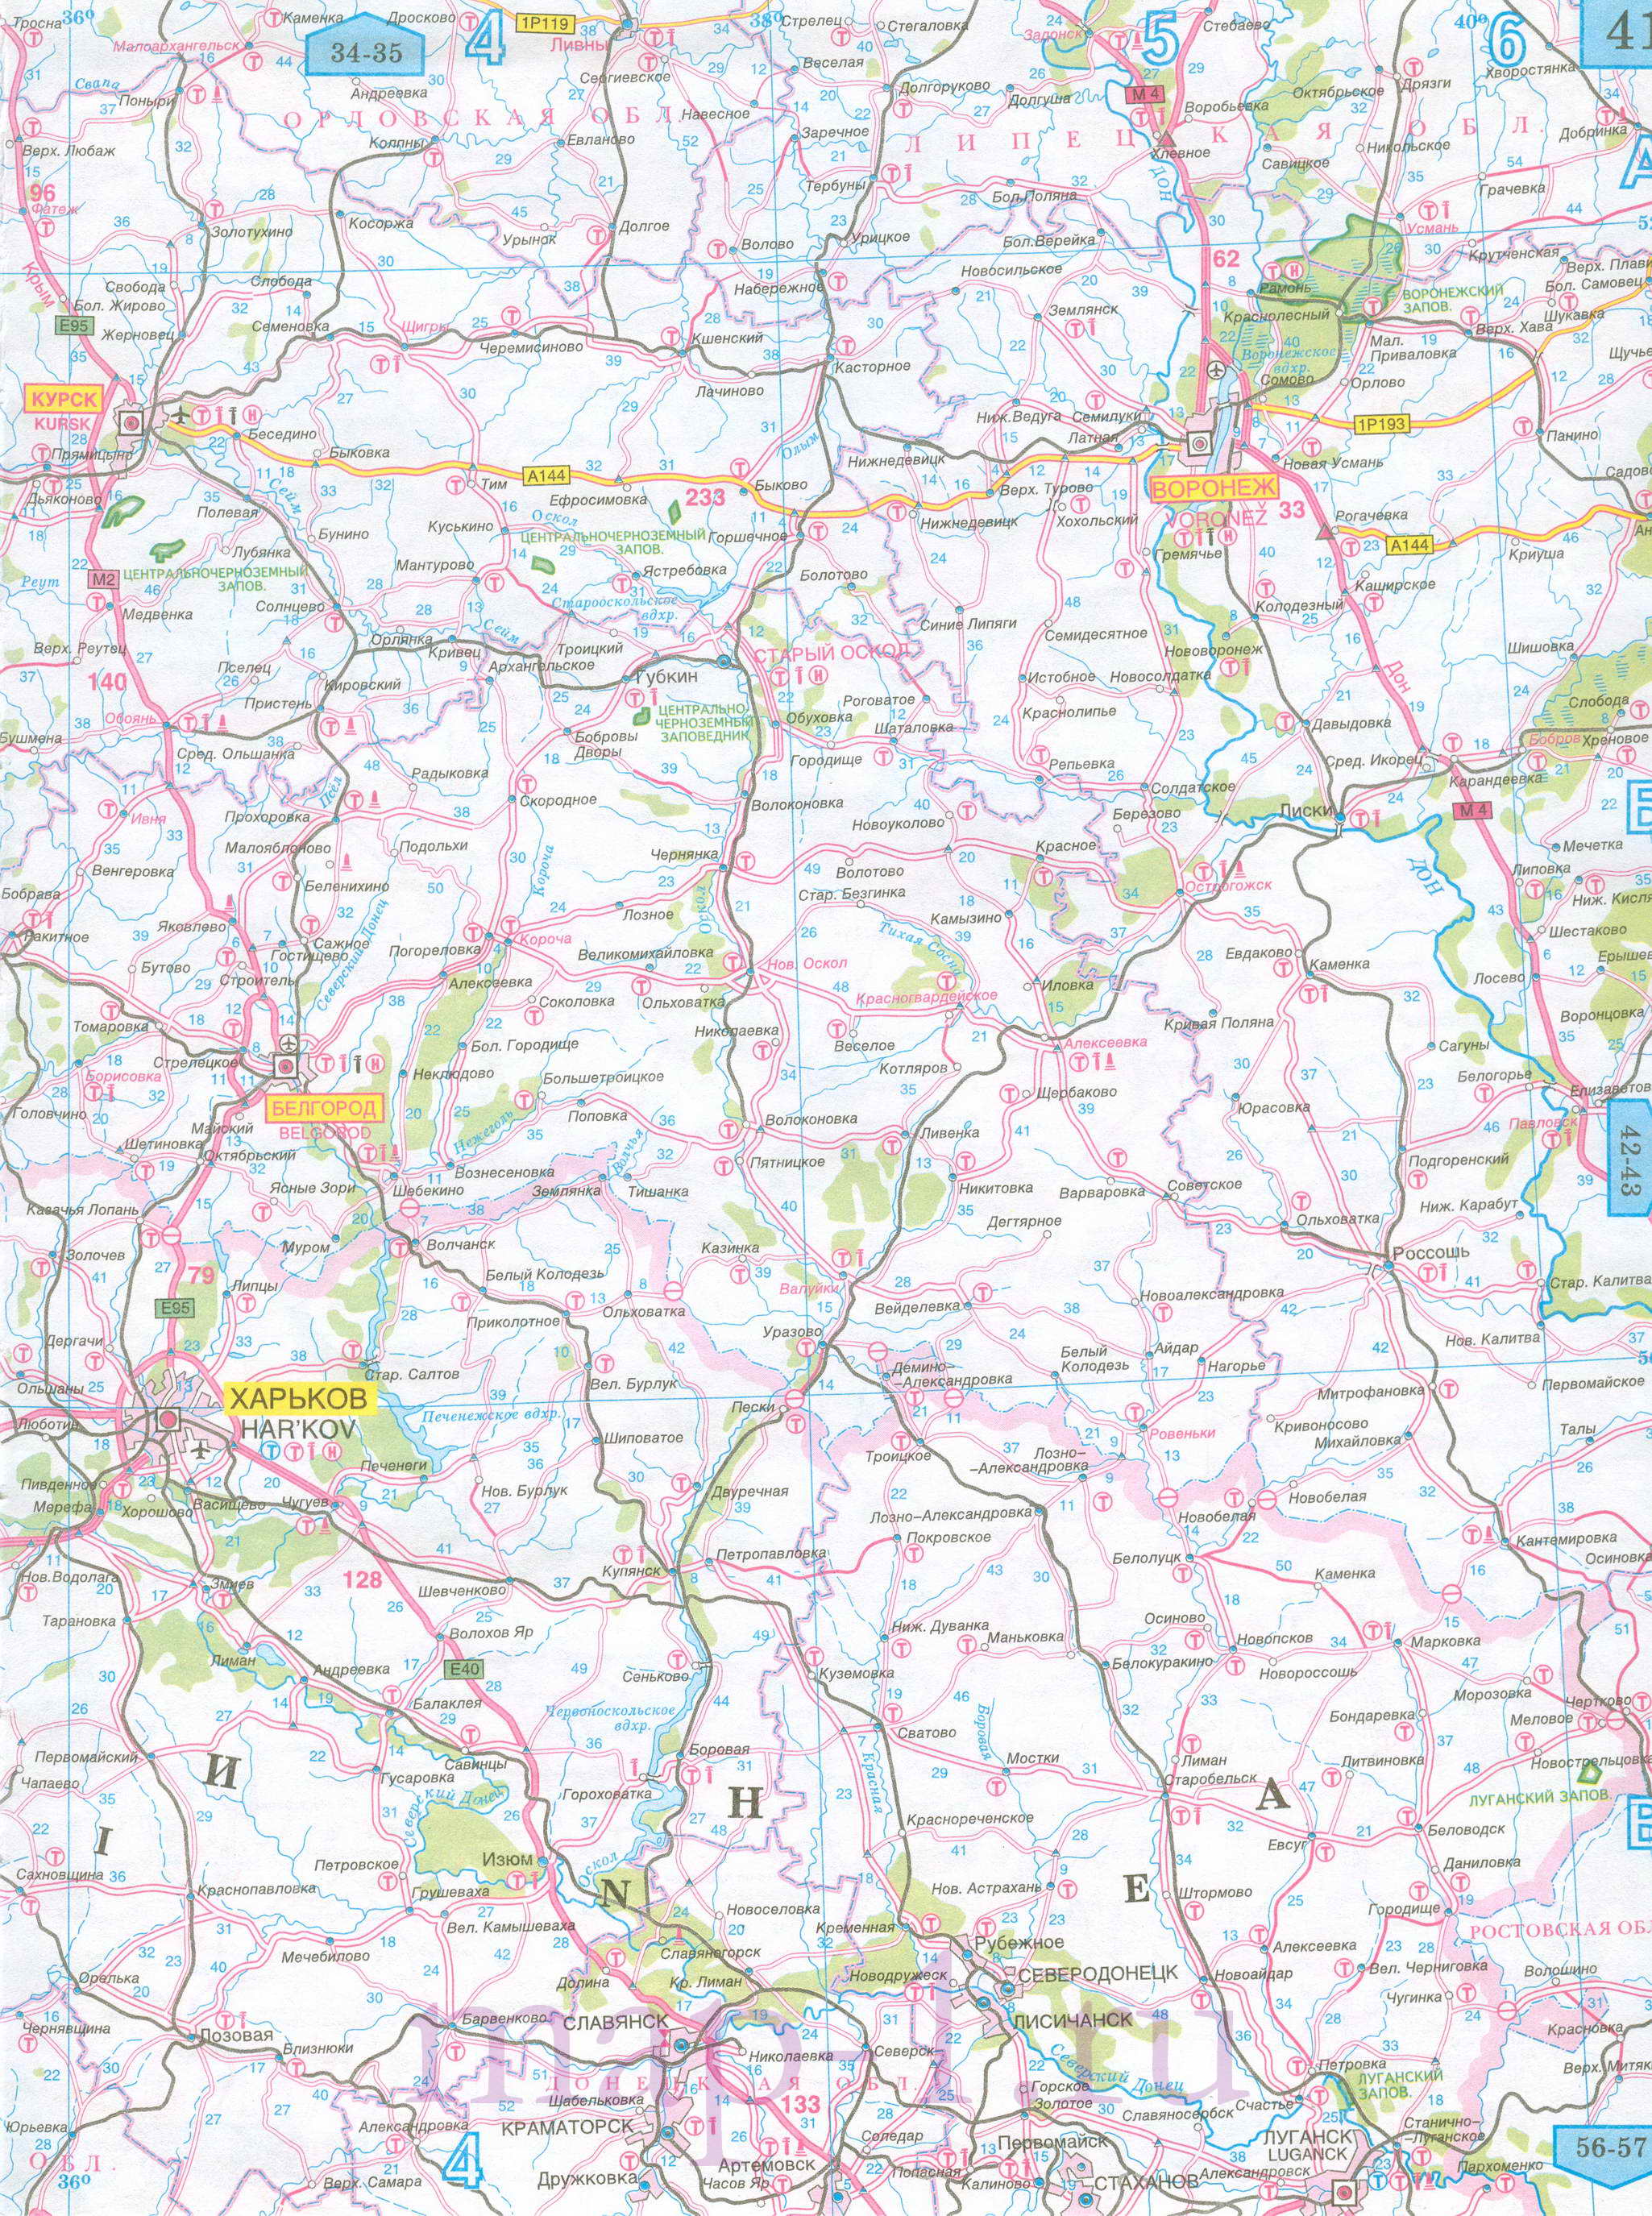 Карта Курской области автомобильная. Подробная карта дорог - Курская область, масштаб 1см:15км, B0 - 